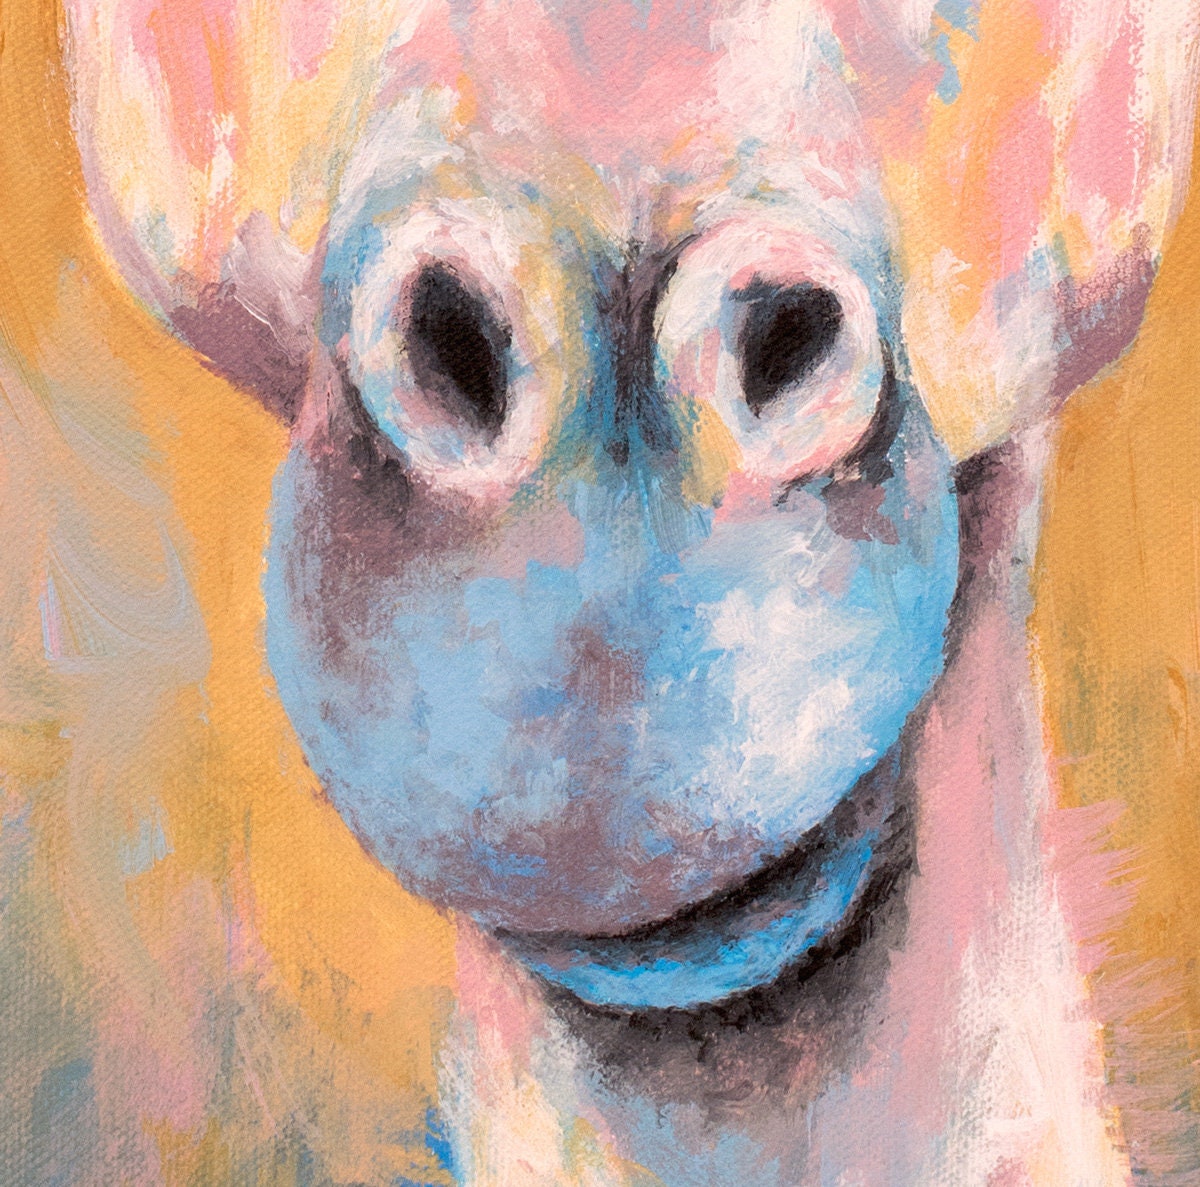 Tanganyika Giraffe Painting - 16x20"